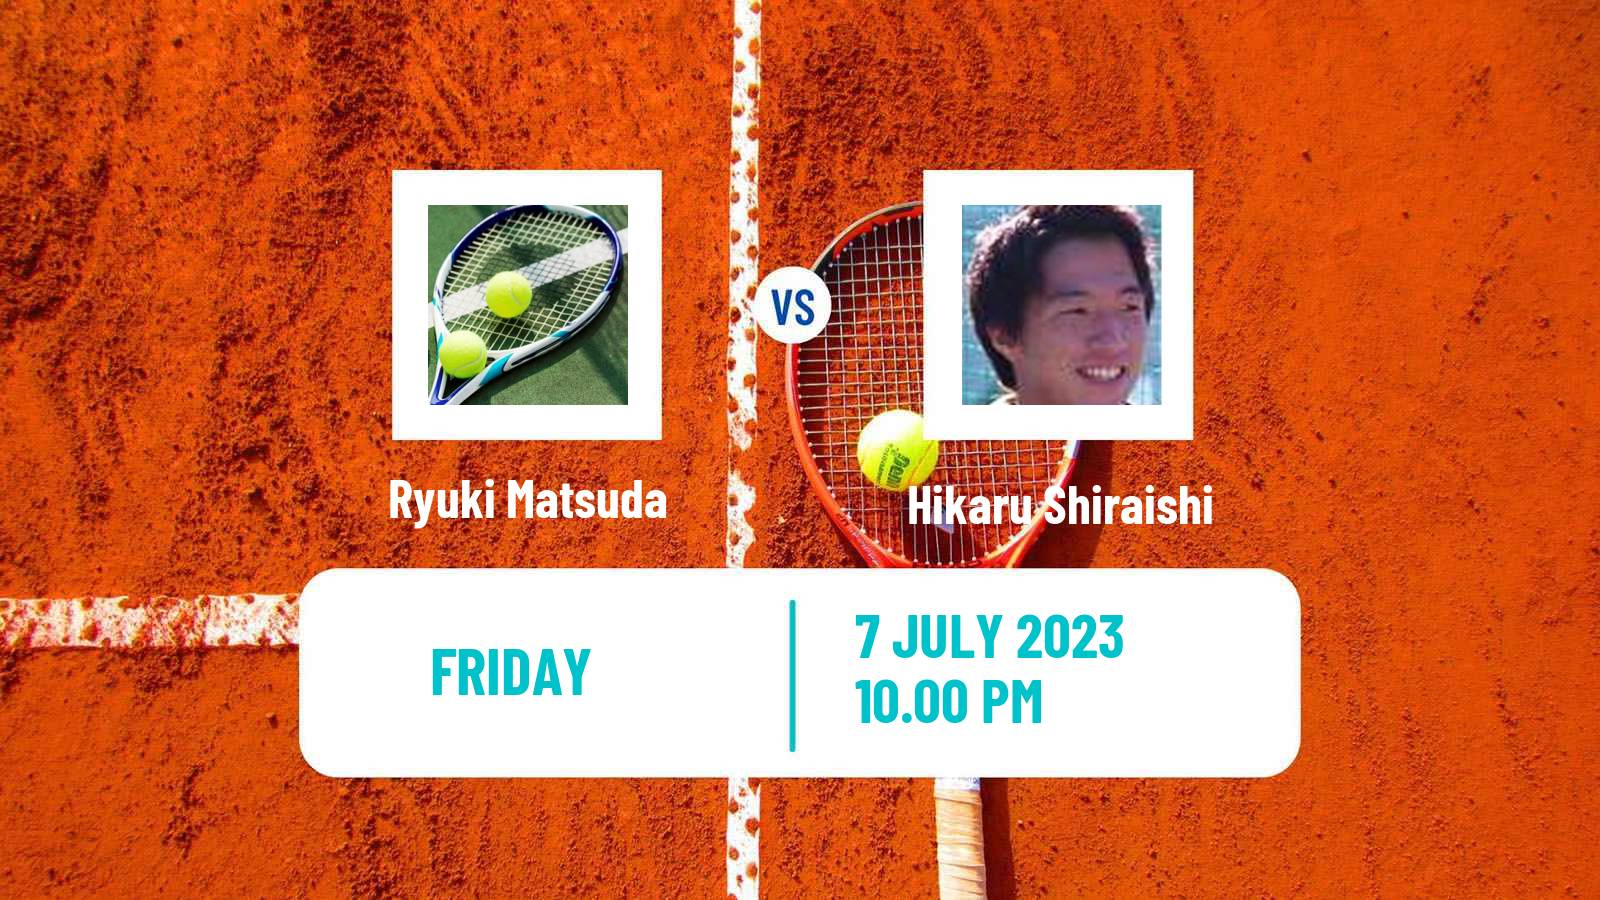 Tennis ITF M15 Nakhon Si Thammarat 3 Men Ryuki Matsuda - Hikaru Shiraishi